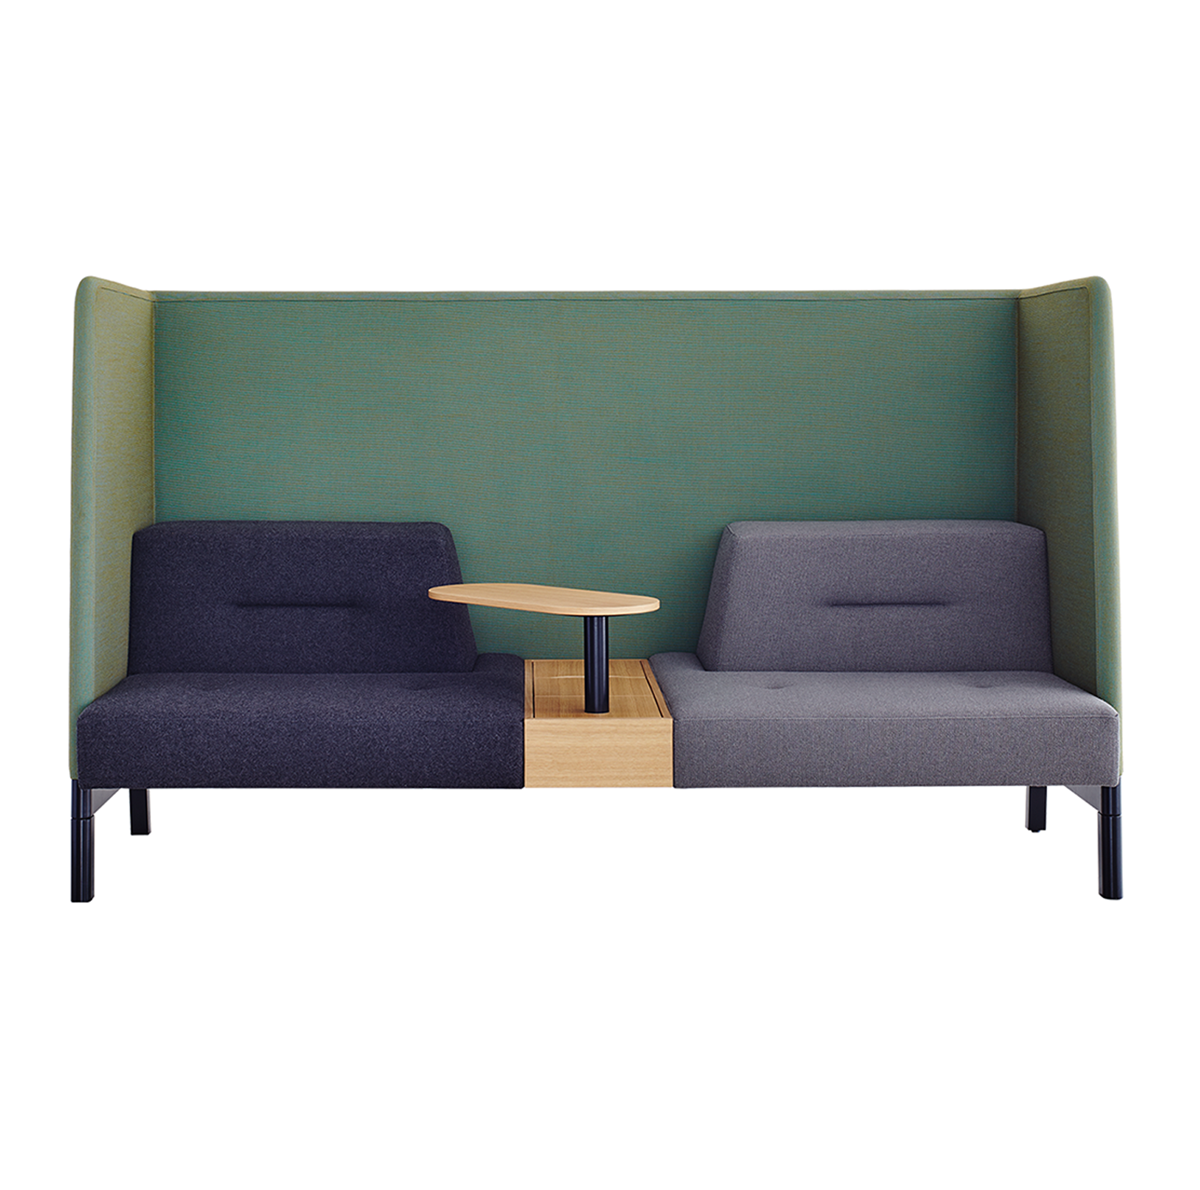 Ophelis-Docks-Seating-System-Matisse-1